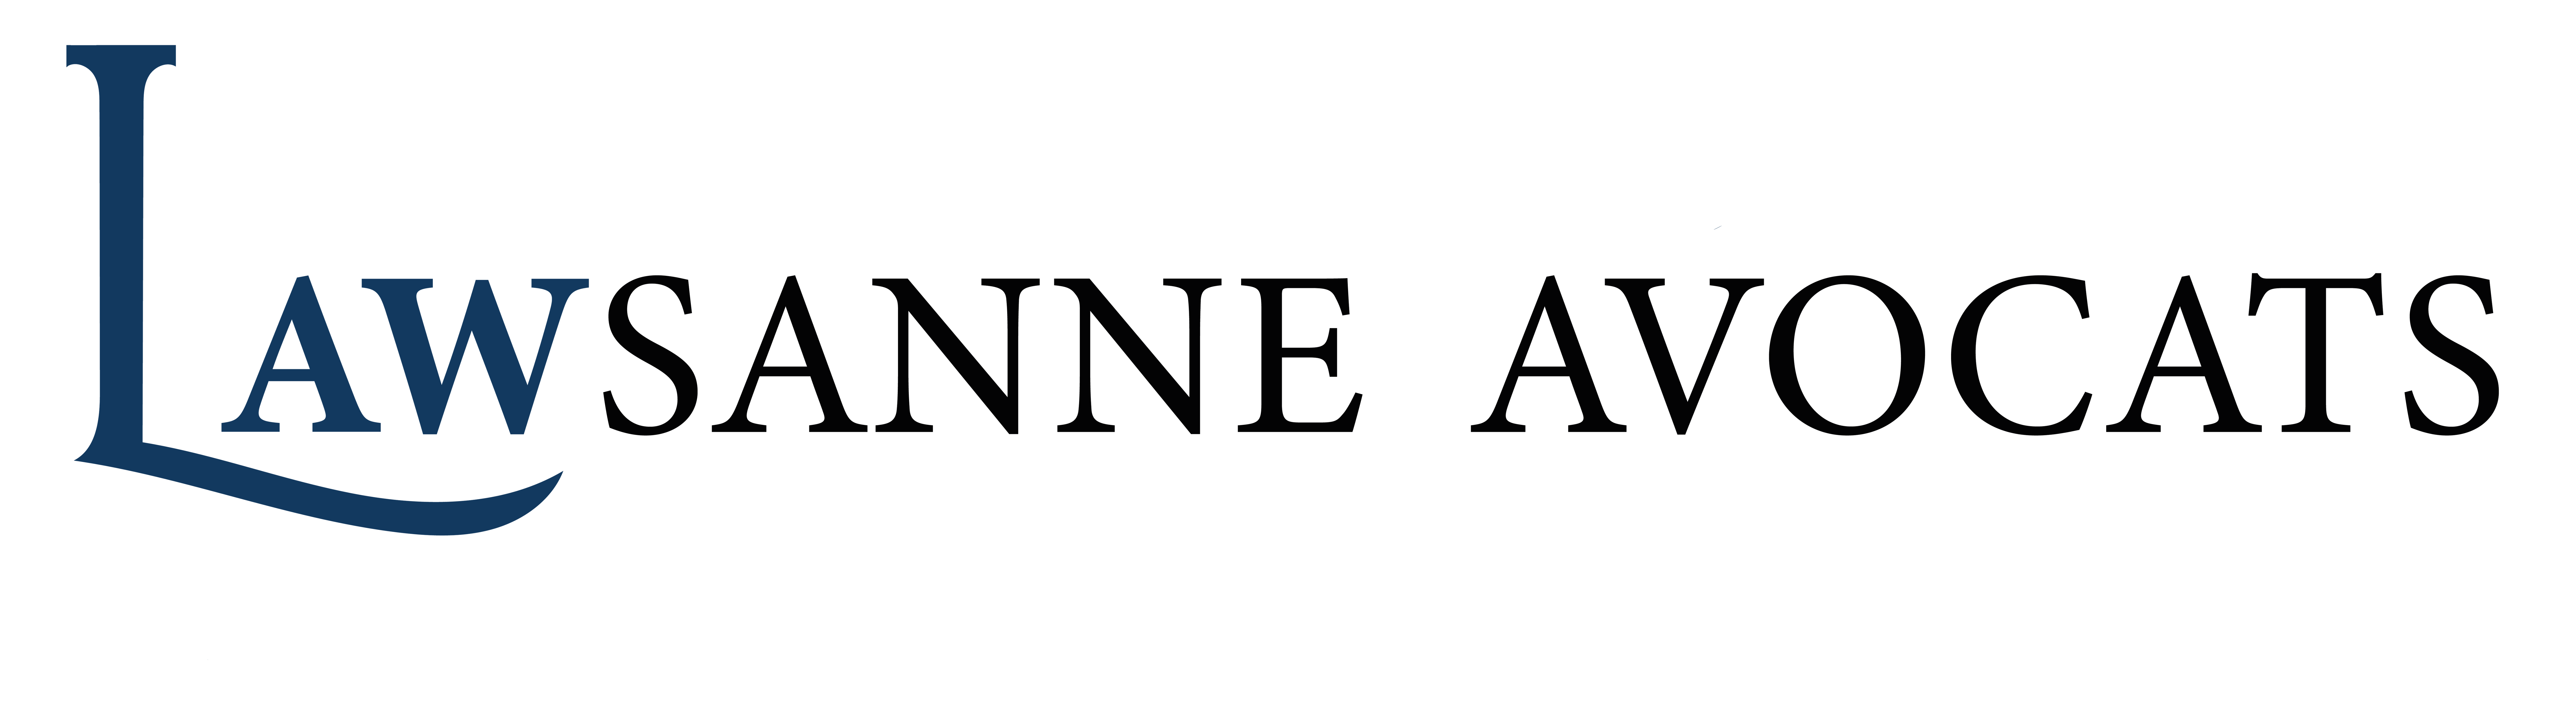 Lawsanne Avocats logo